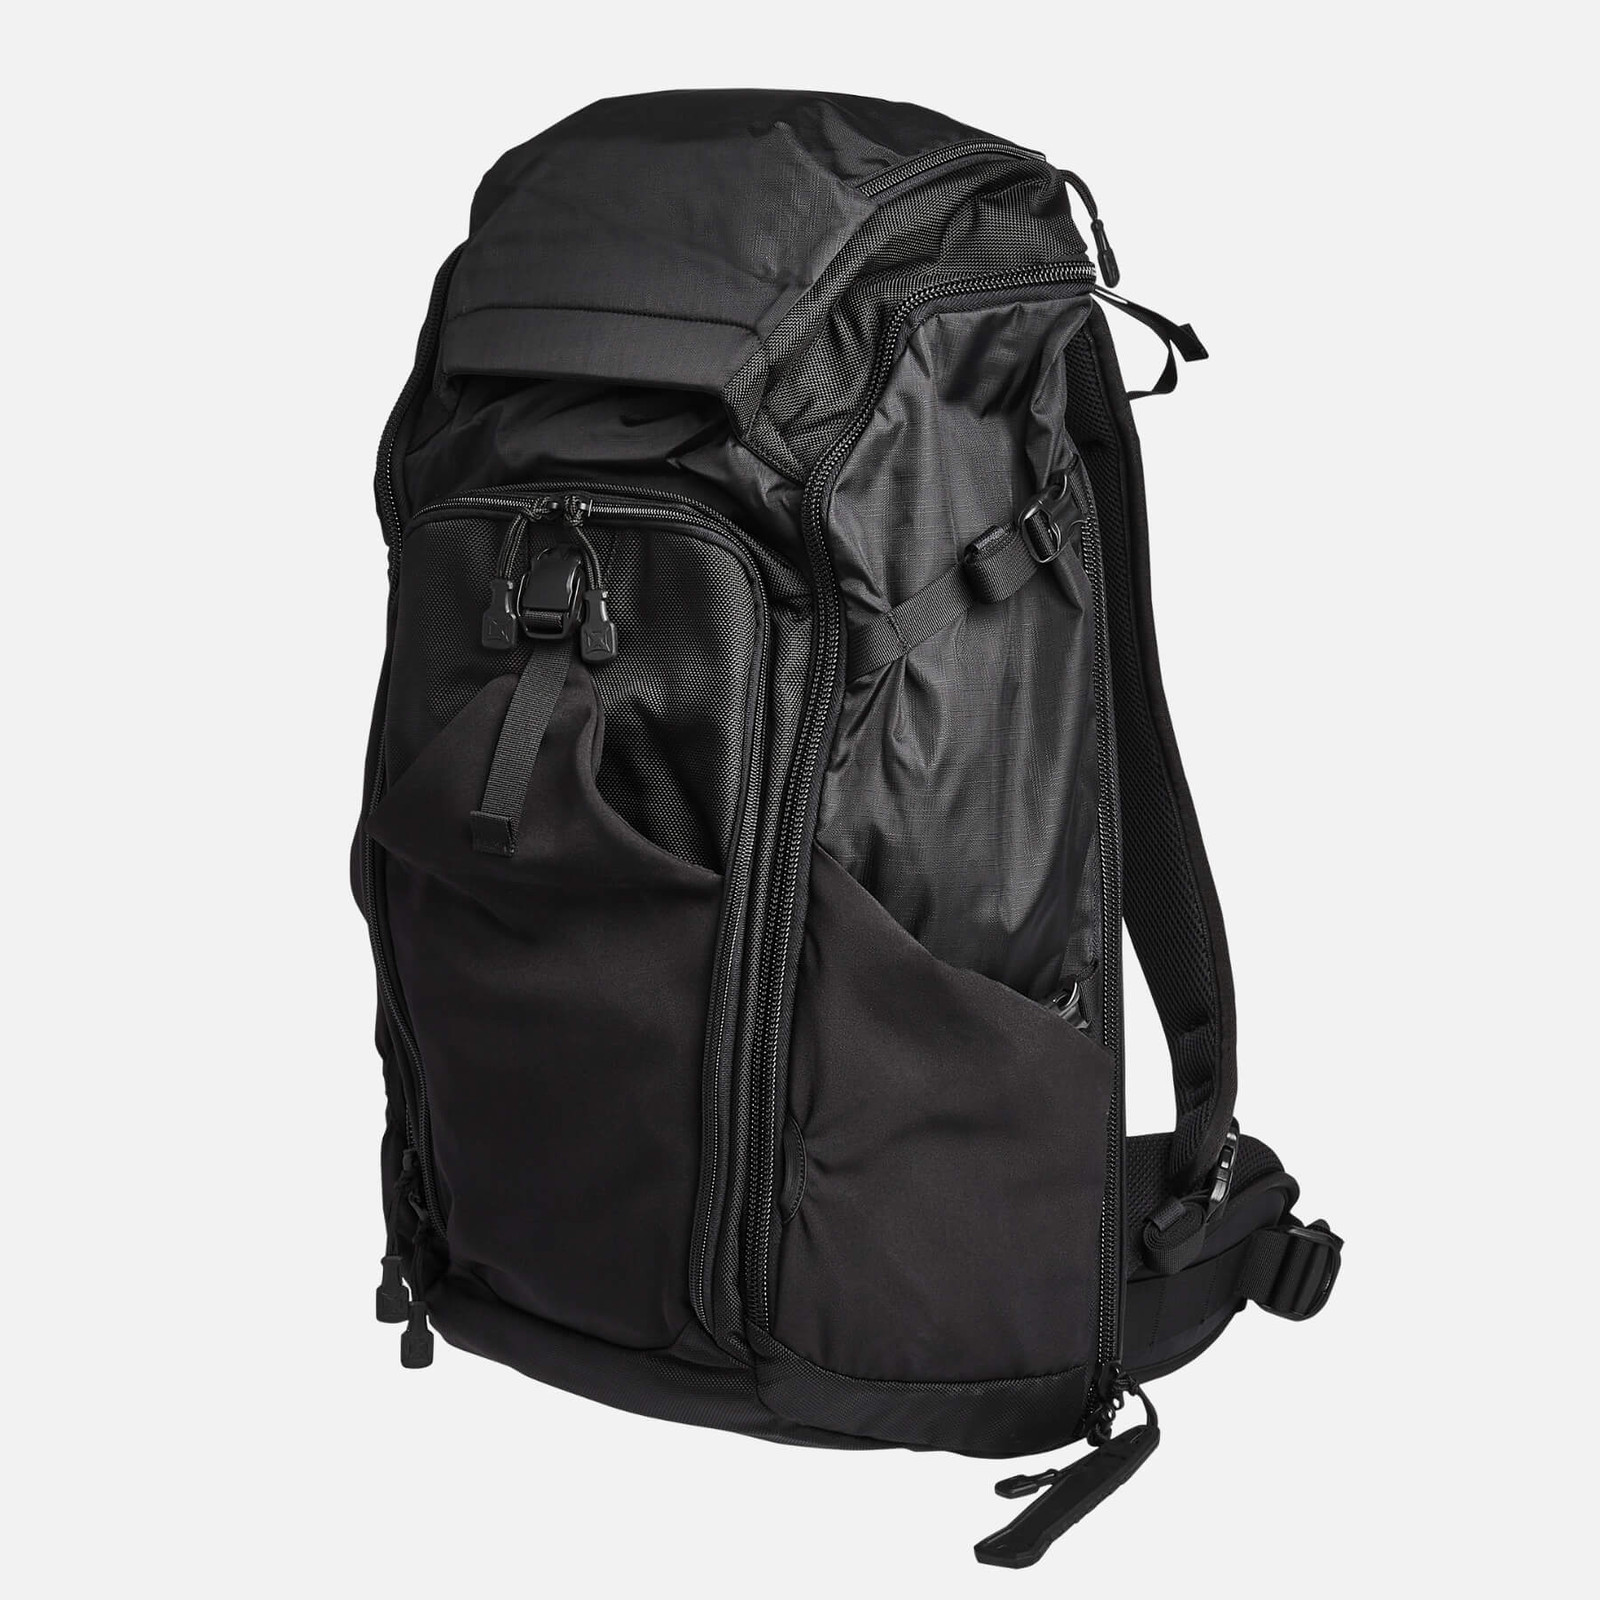 Overlander Backpack